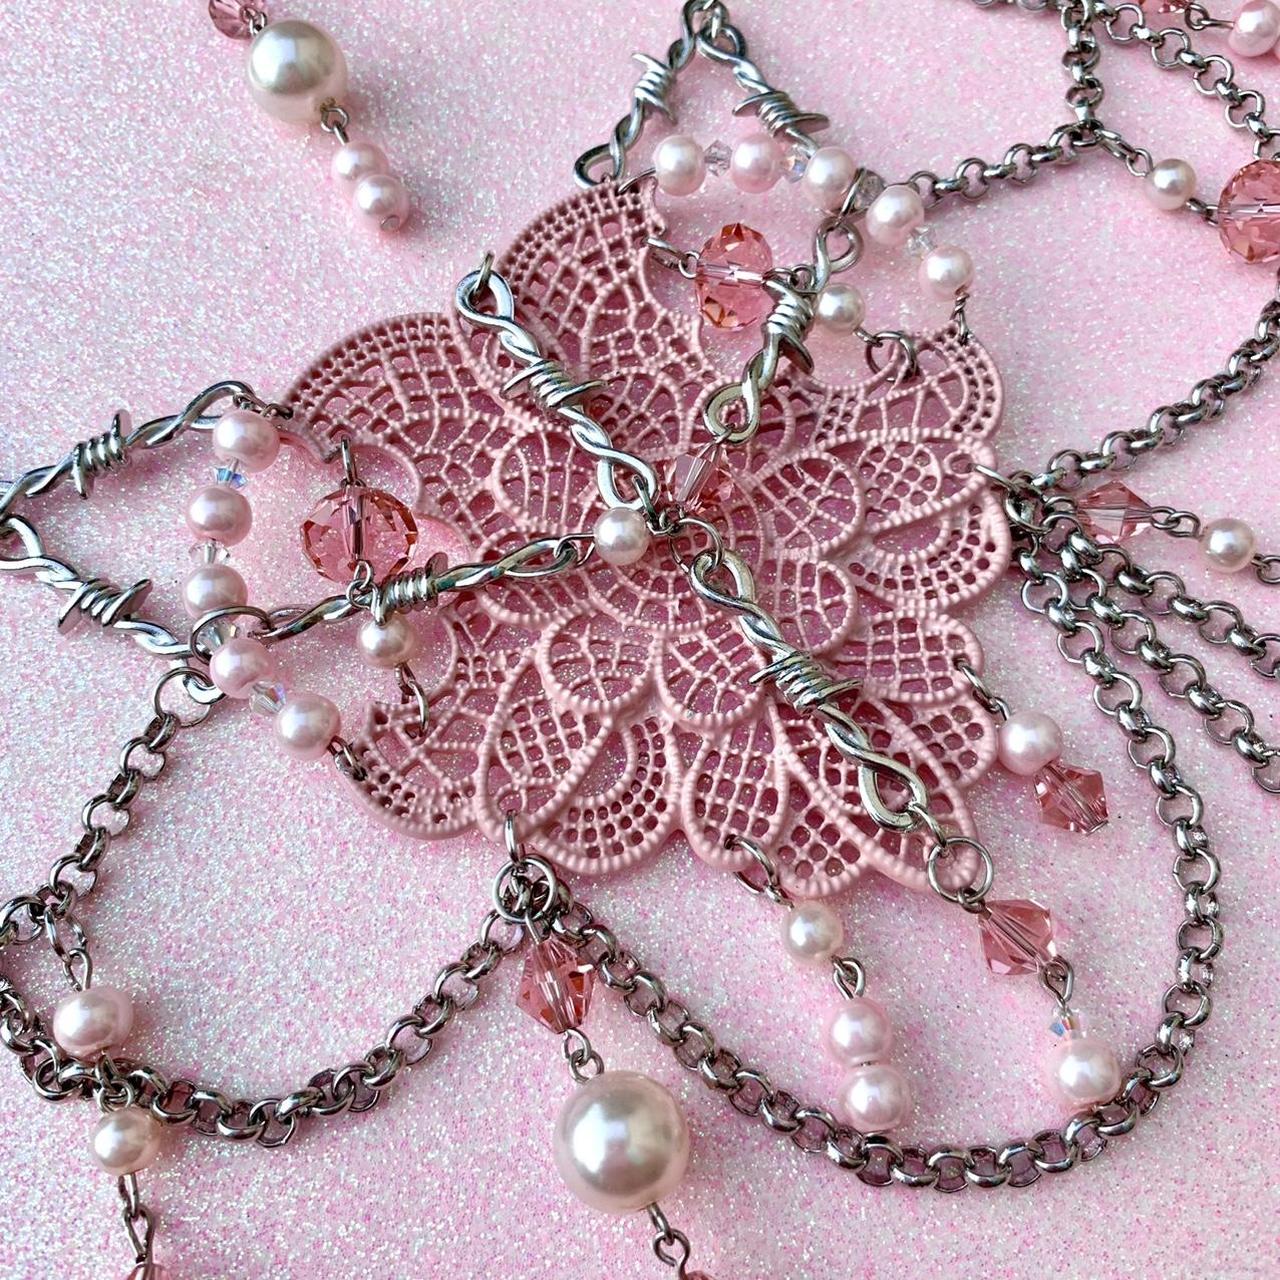 Sugarpill Women's Pink and White Jewellery (2)